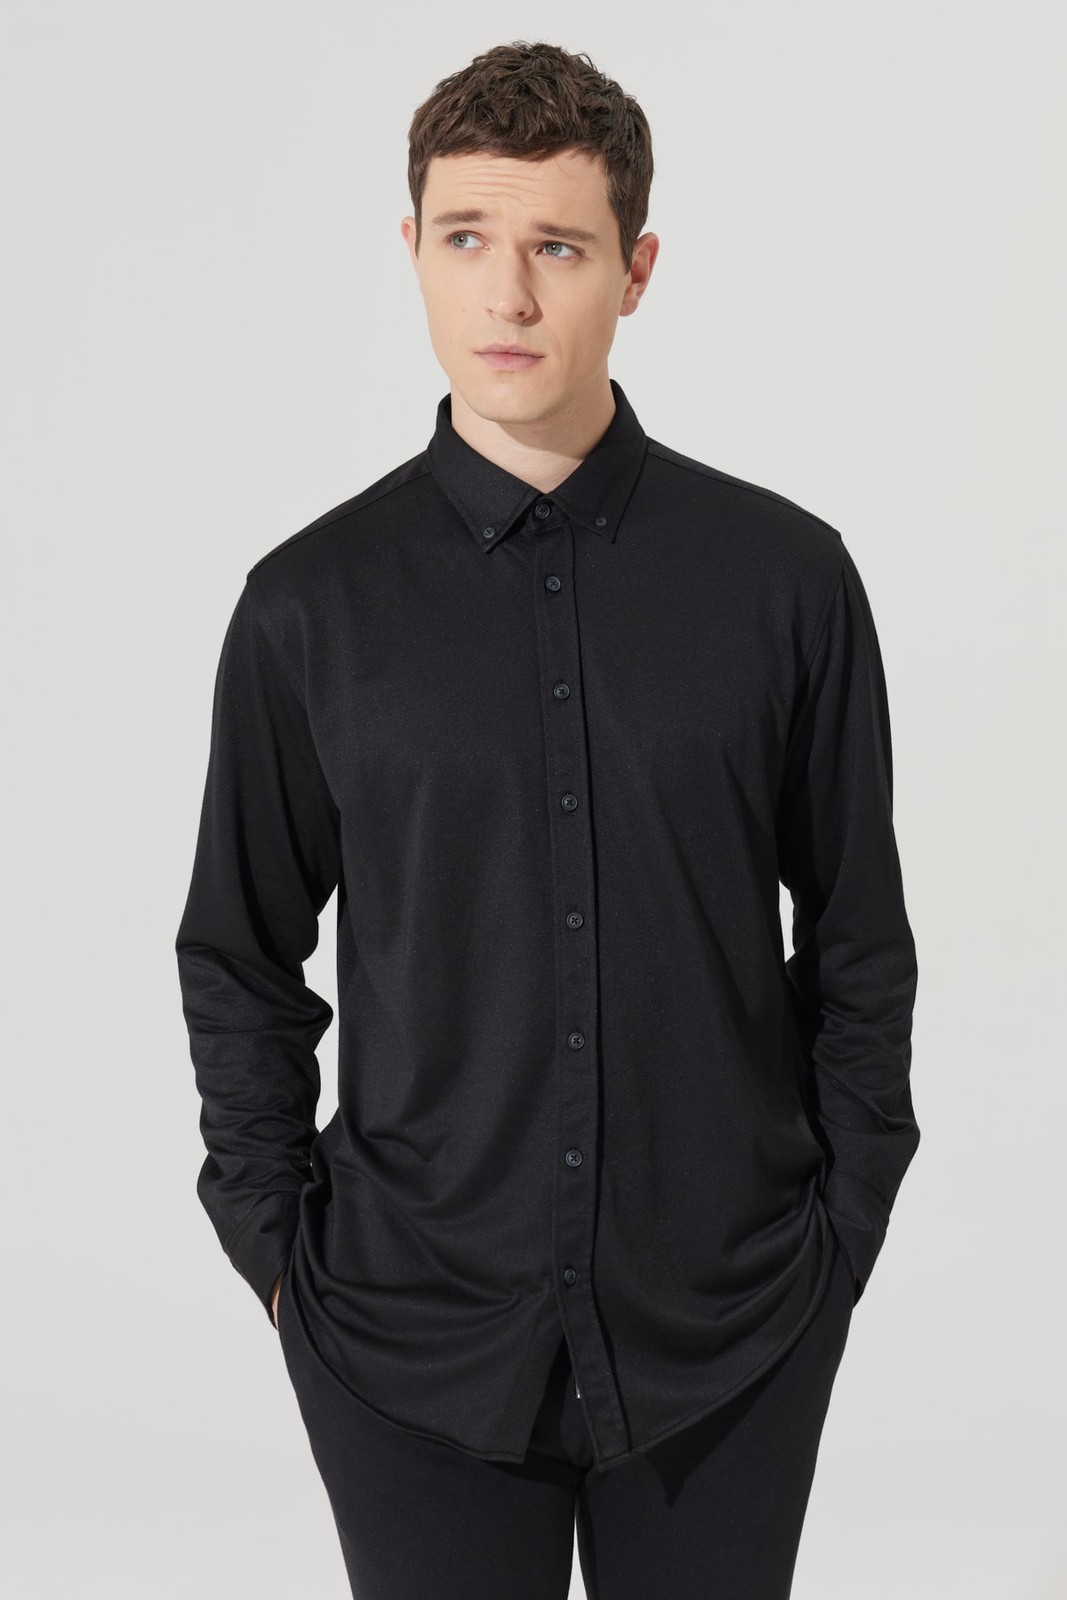 ALTINYILDIZ CLASSICS Men's Black Comfort Fit Comfy Cut Buttoned Collar Cotton Shirt.